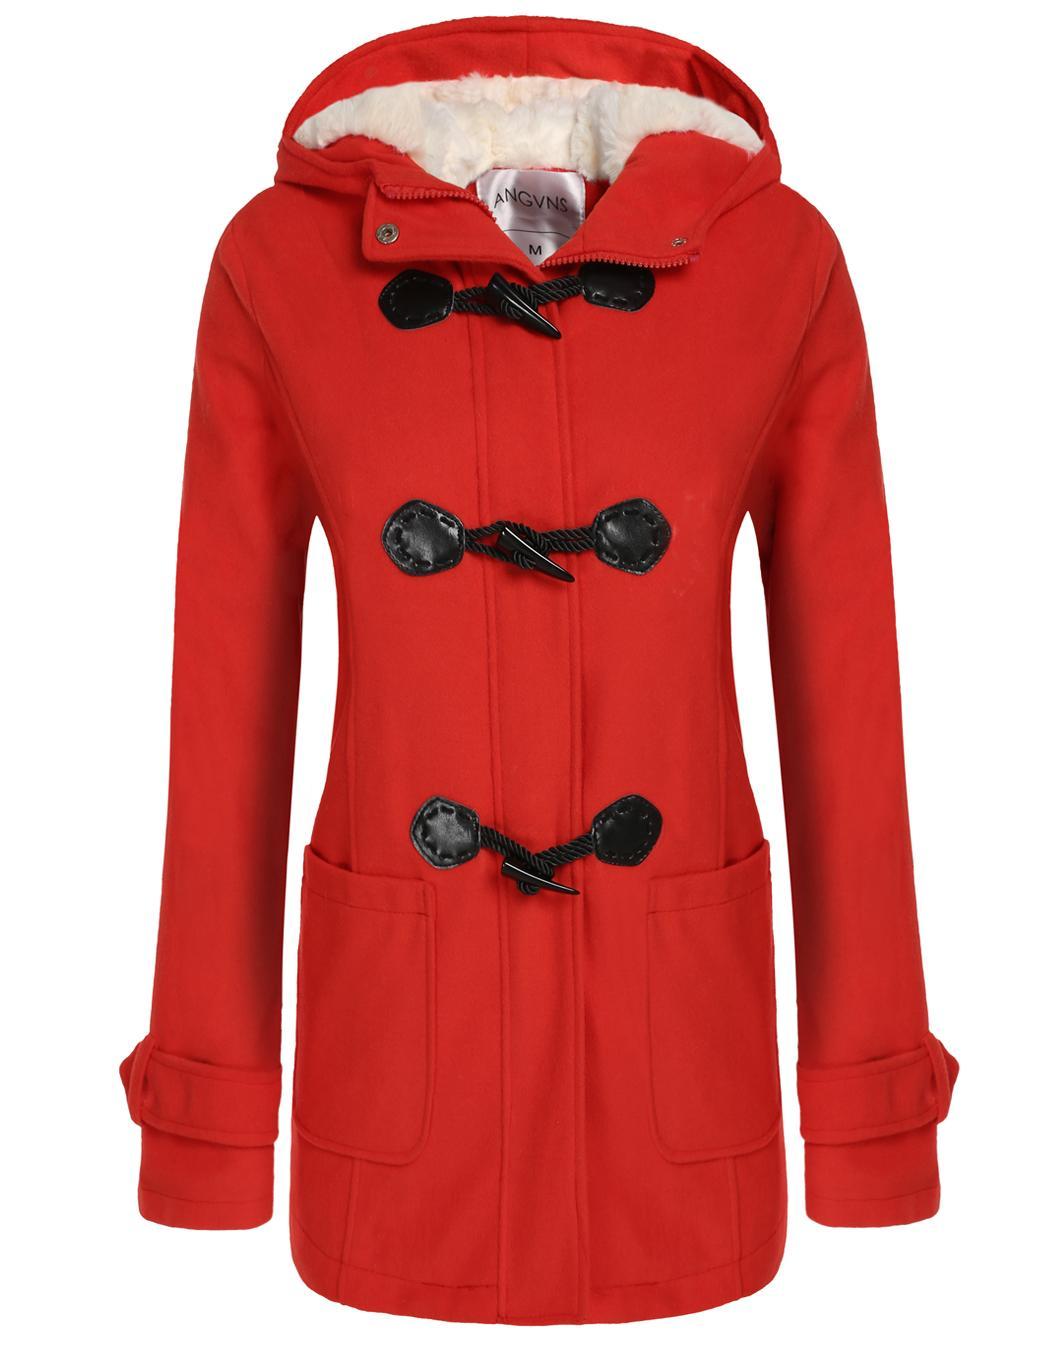 Women hooded Windbreaker Outwear Warm Wool Slim Long Coat Jacket Trench ...